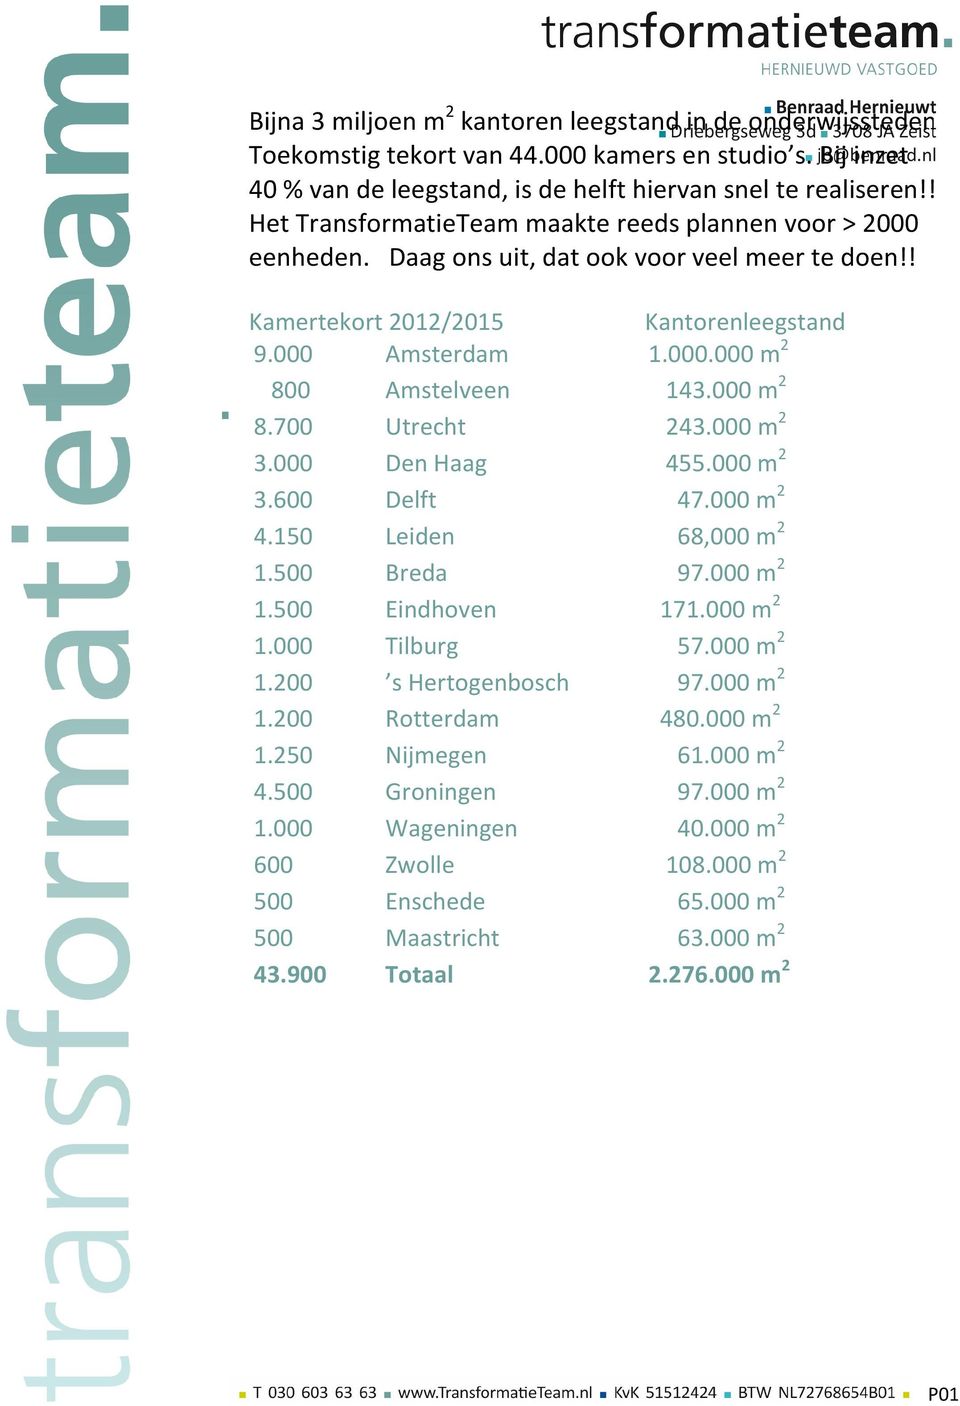 000 m 2 8.700 Utrecht 243.000 m 2 3.000 Den Haag 455.000 m 2 3.600 Delft 47.000 m 2 4.150 Leiden 68,000 m 2 1.500 Breda 97.000 m 2 1.500 Eindhoven 171.000 m 2 1.000 Tilburg 57.000 m 2 1.200 s Hertogenbosch 97.